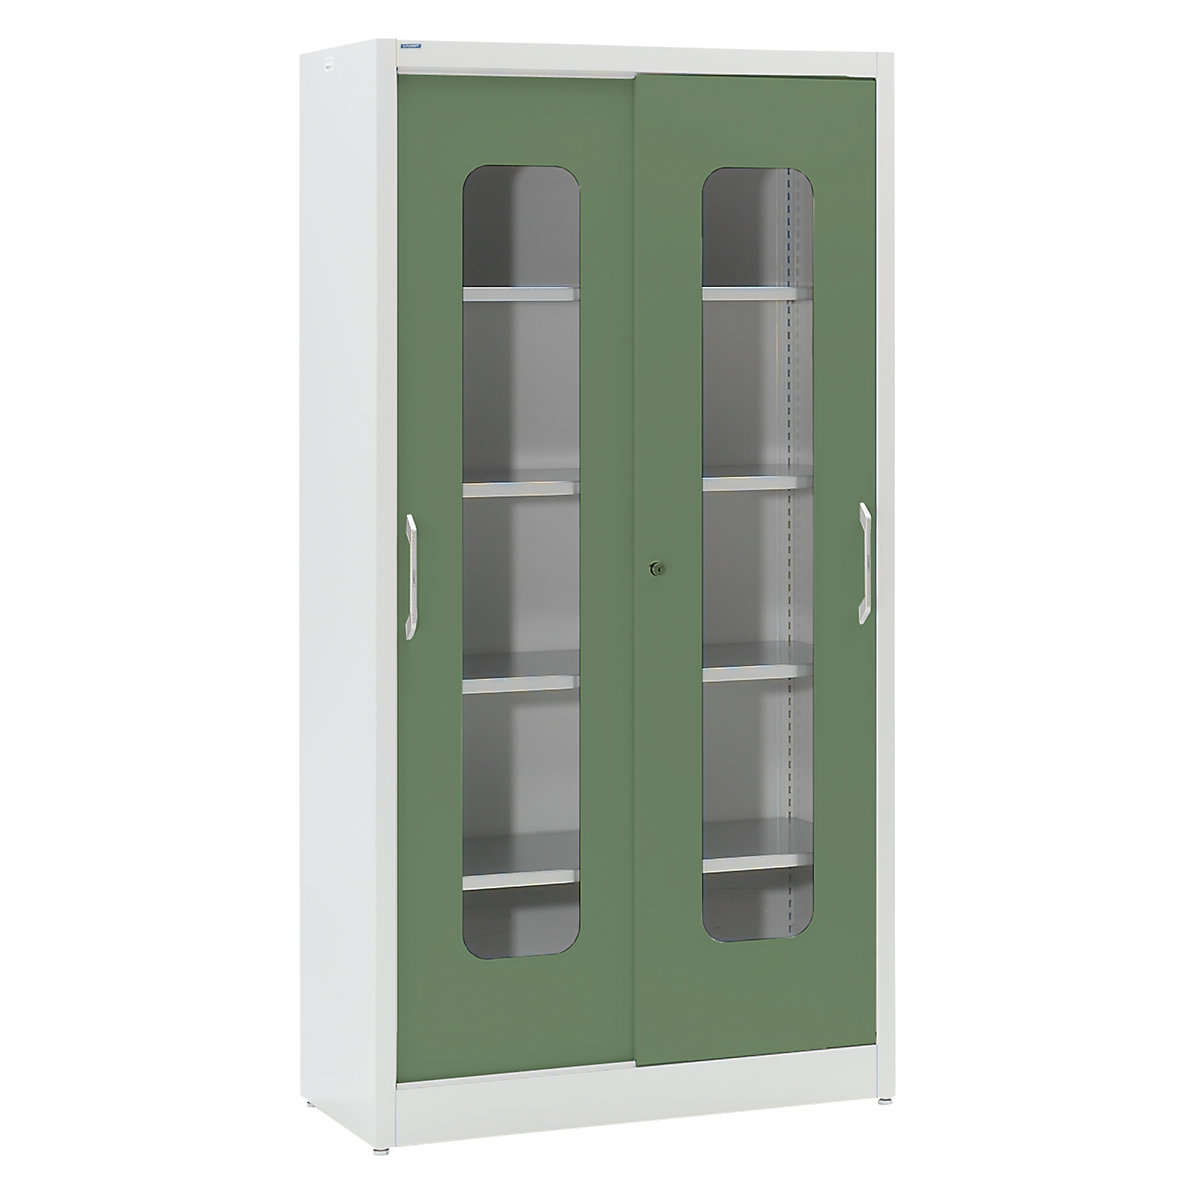 Omara z drsnimi vrati in kontrolnimi okenci – mauser, 4 police VxŠ 1950 x 1000 mm, globina 500 mm, vrata reseda zelena-5